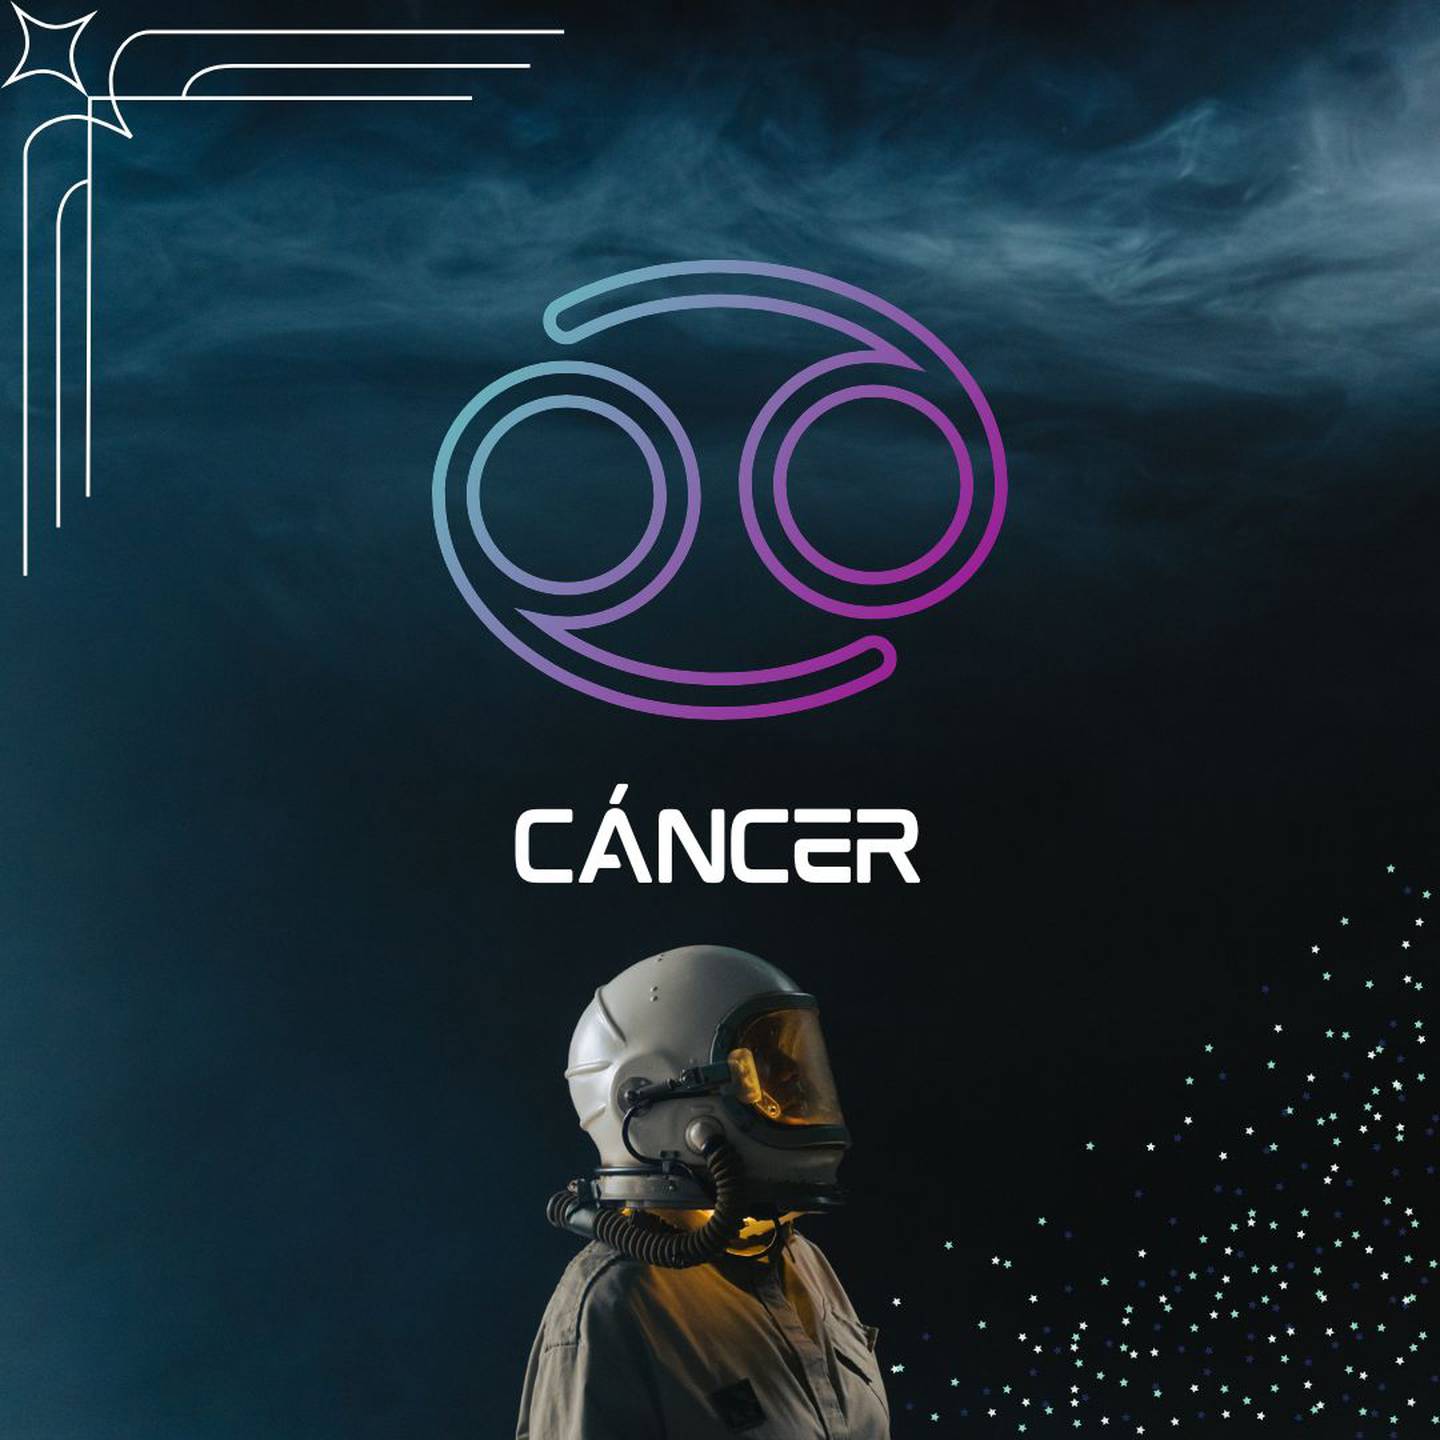 Sobre un fondo oscuro, con humo en la parte superior, aparece el símbolo de Cáncer. Al centro aparece el nombre del signo en color blanco y todavía más abajo, un astronauta está mirando hacia la derecha.